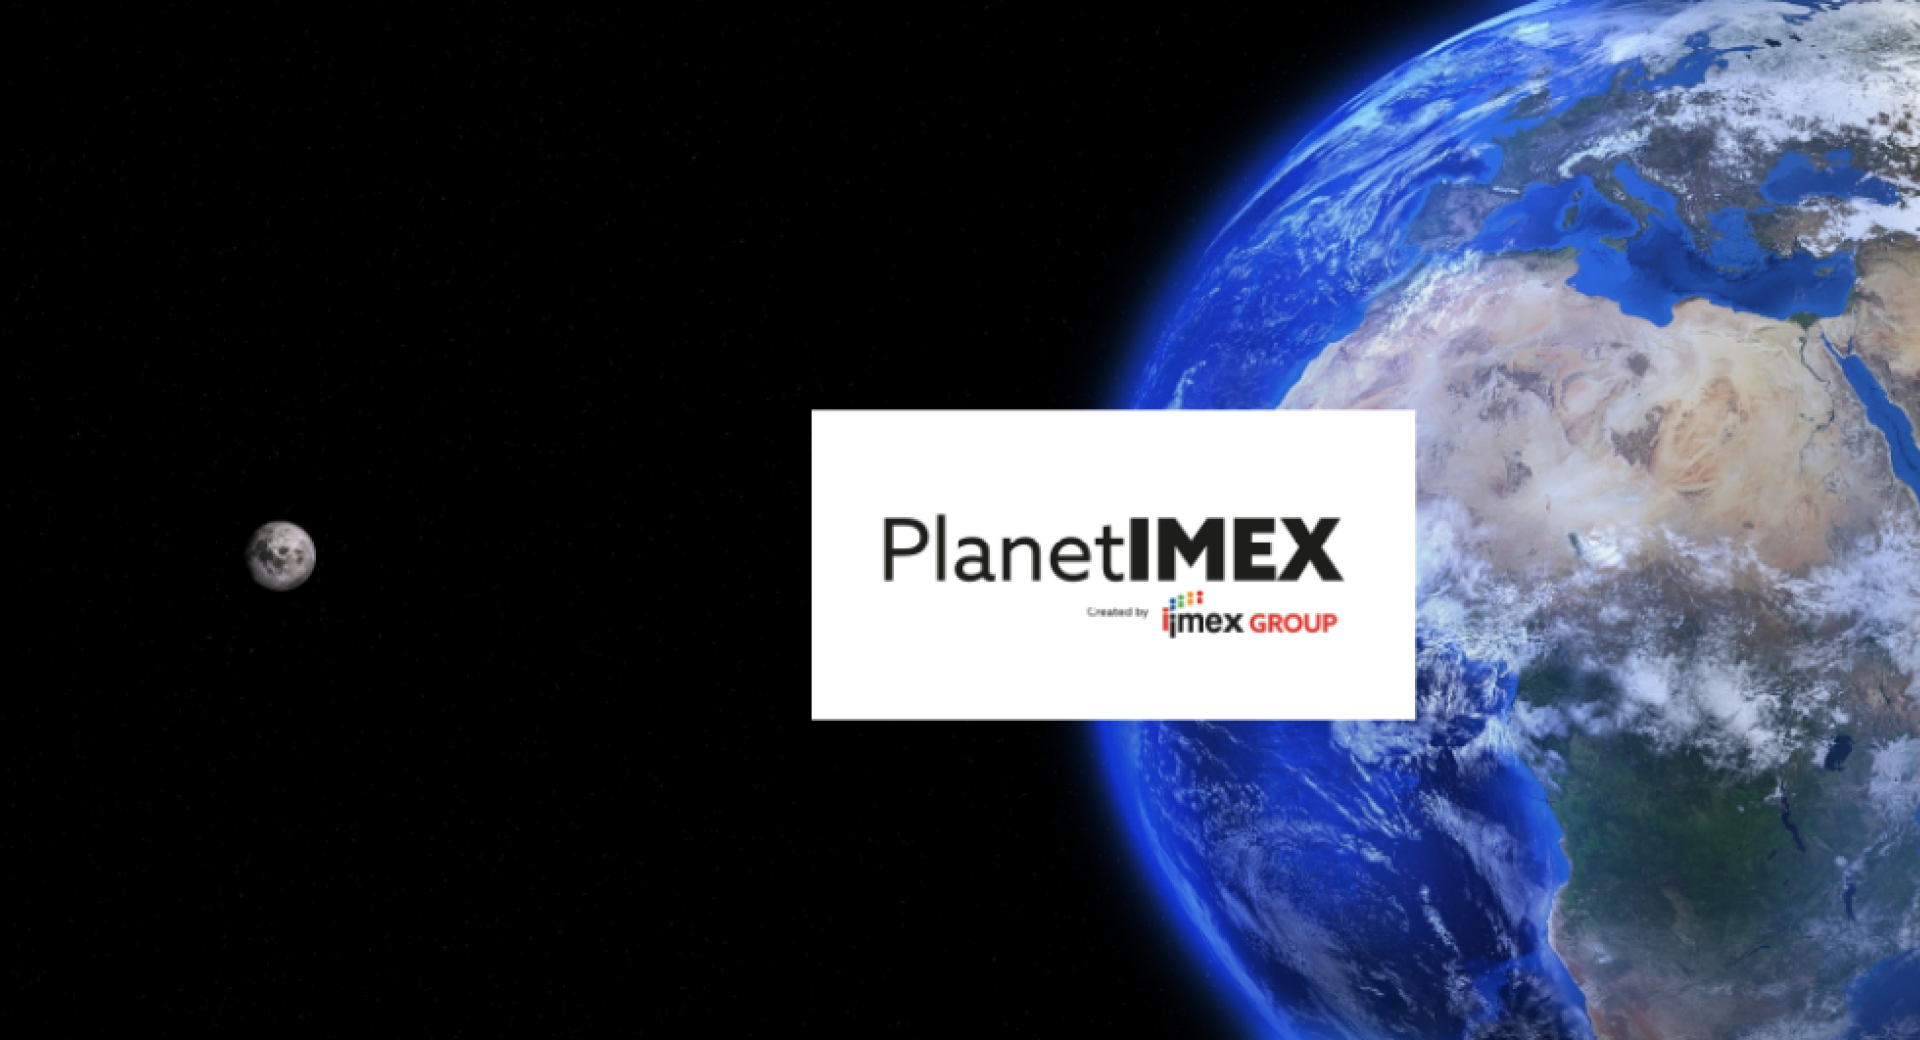 Oglasna pasica za spletno poslovno borzo Planet IMEX 2020.